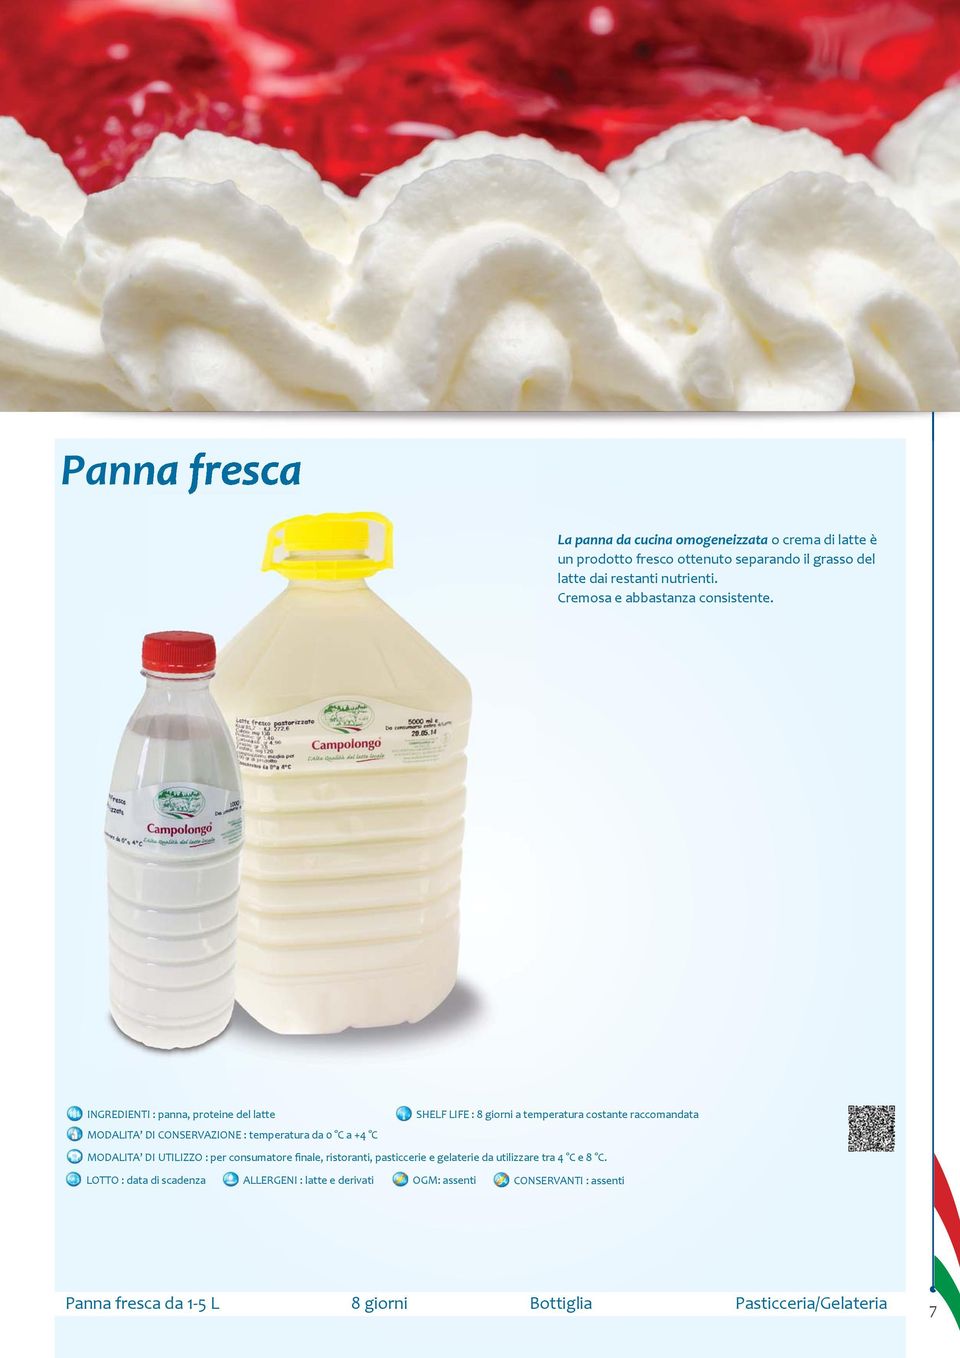 INGREDIENTI : panna, proteine del latte SHELF LIFE : 8 giorni a temperatura costante raccomandata MODALITA DI CONSERVAZIONE : temperatura da 0 C a +4